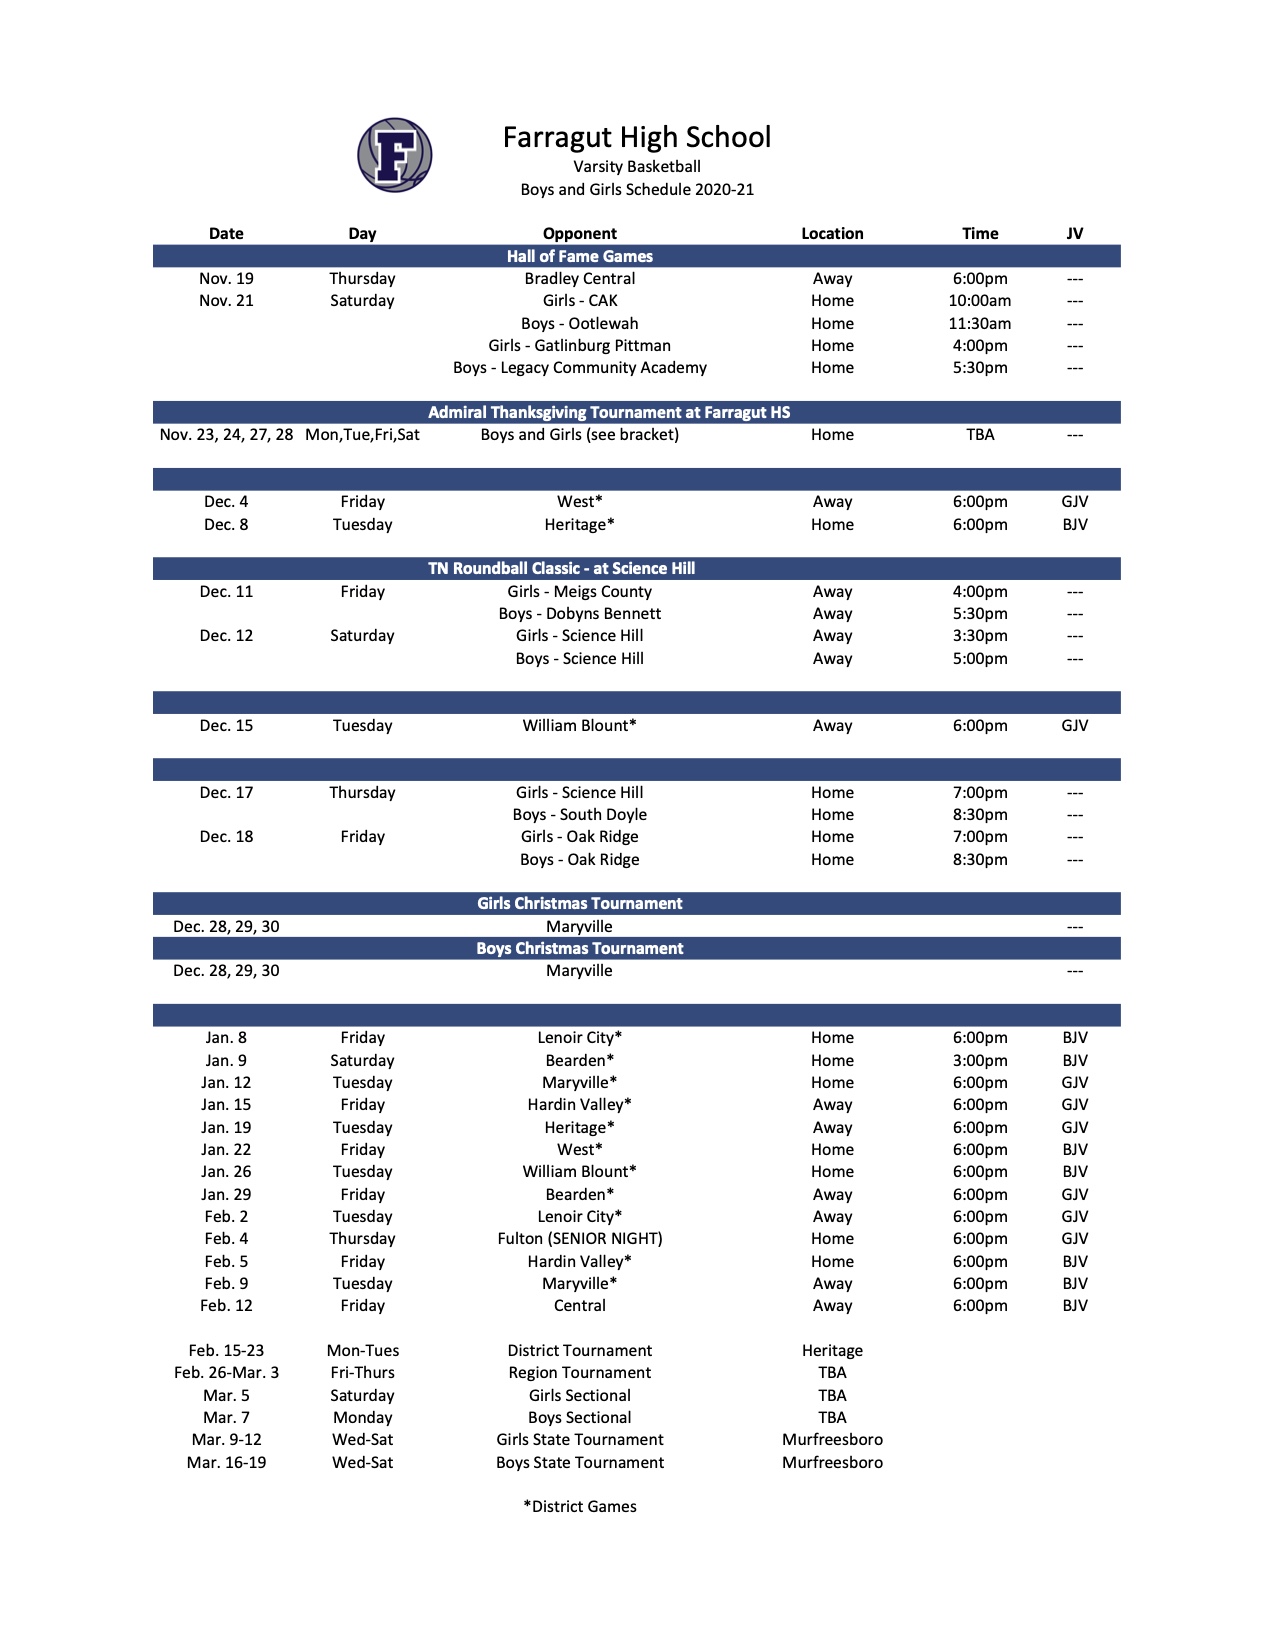 Farragut High School 2020-2021 Basketball Schedule